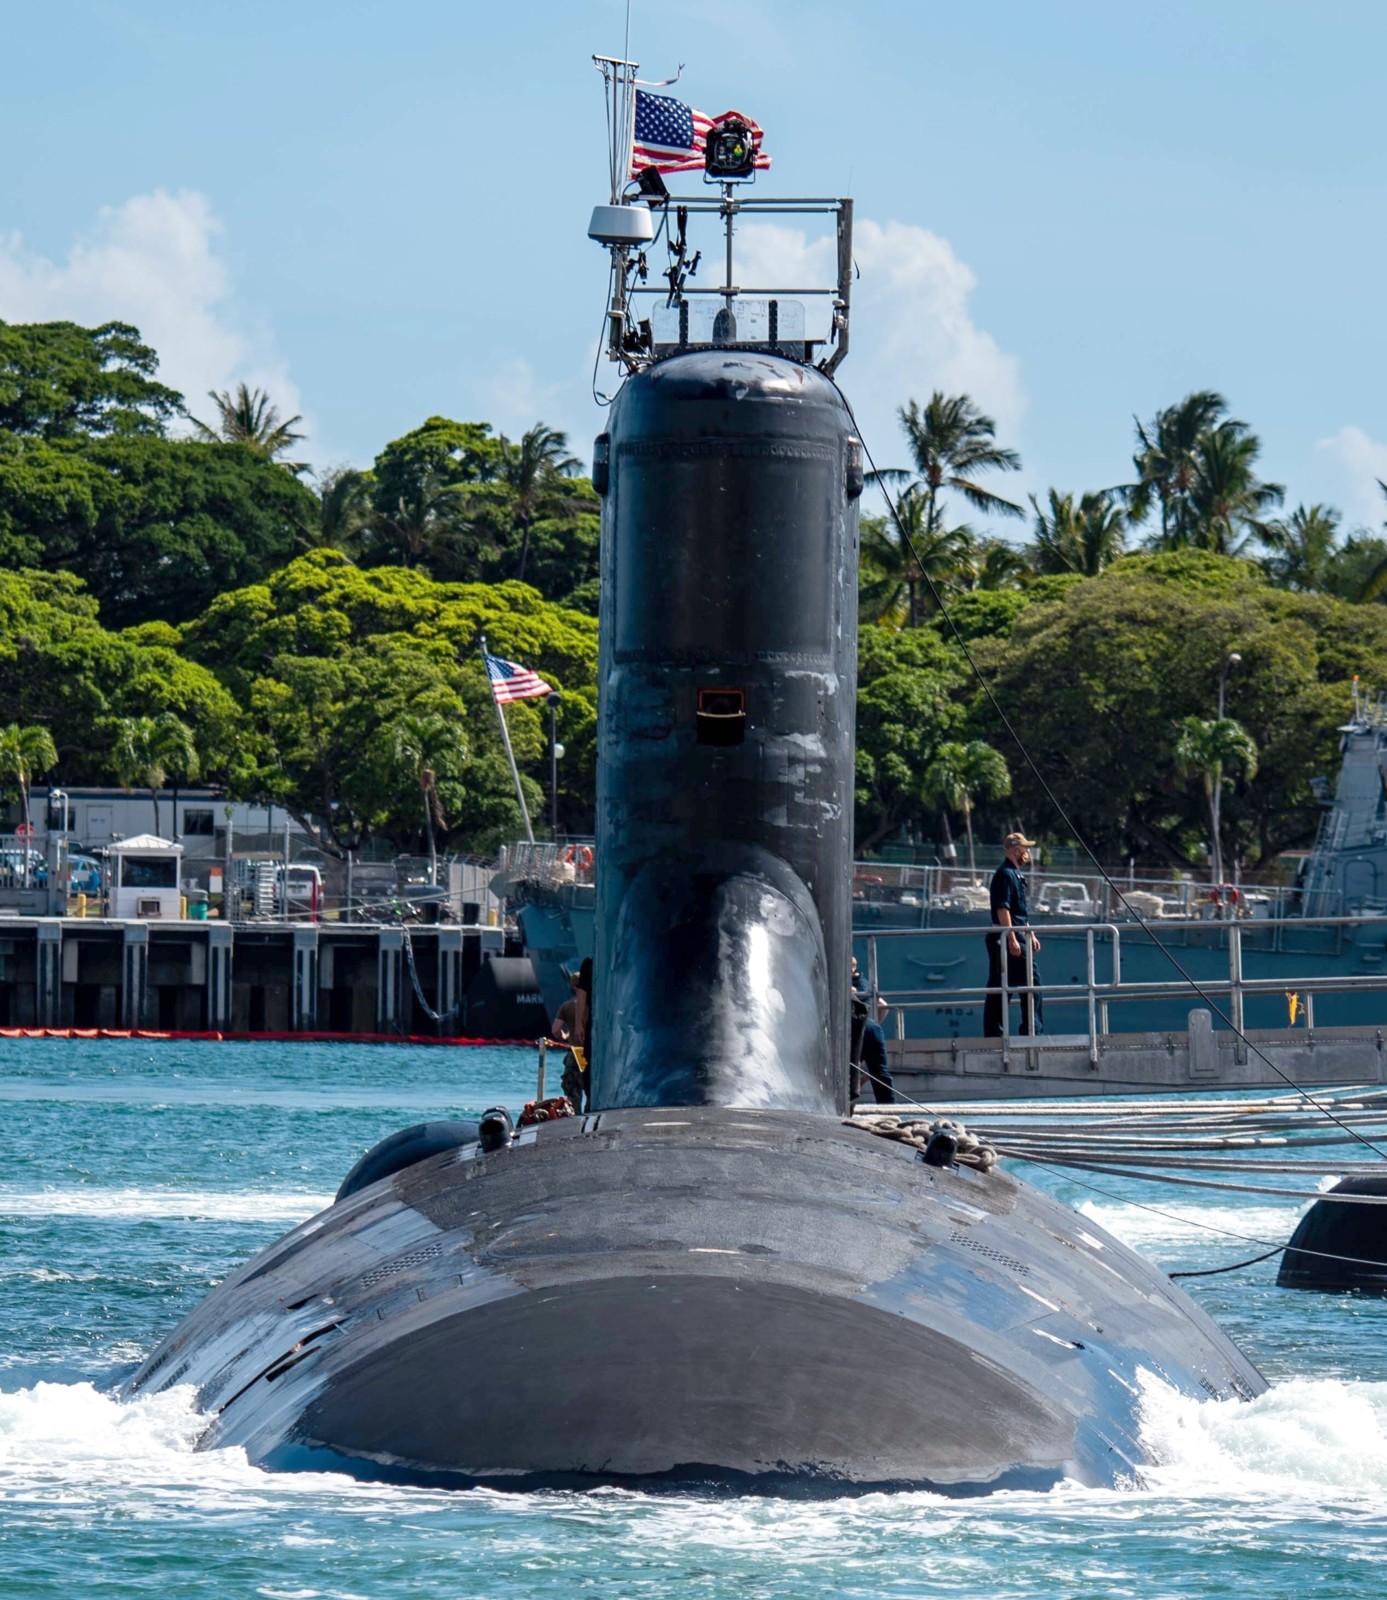 ssn-786 uss illinois virginia class attack submarine us navy 31 pearl harbor hawaii